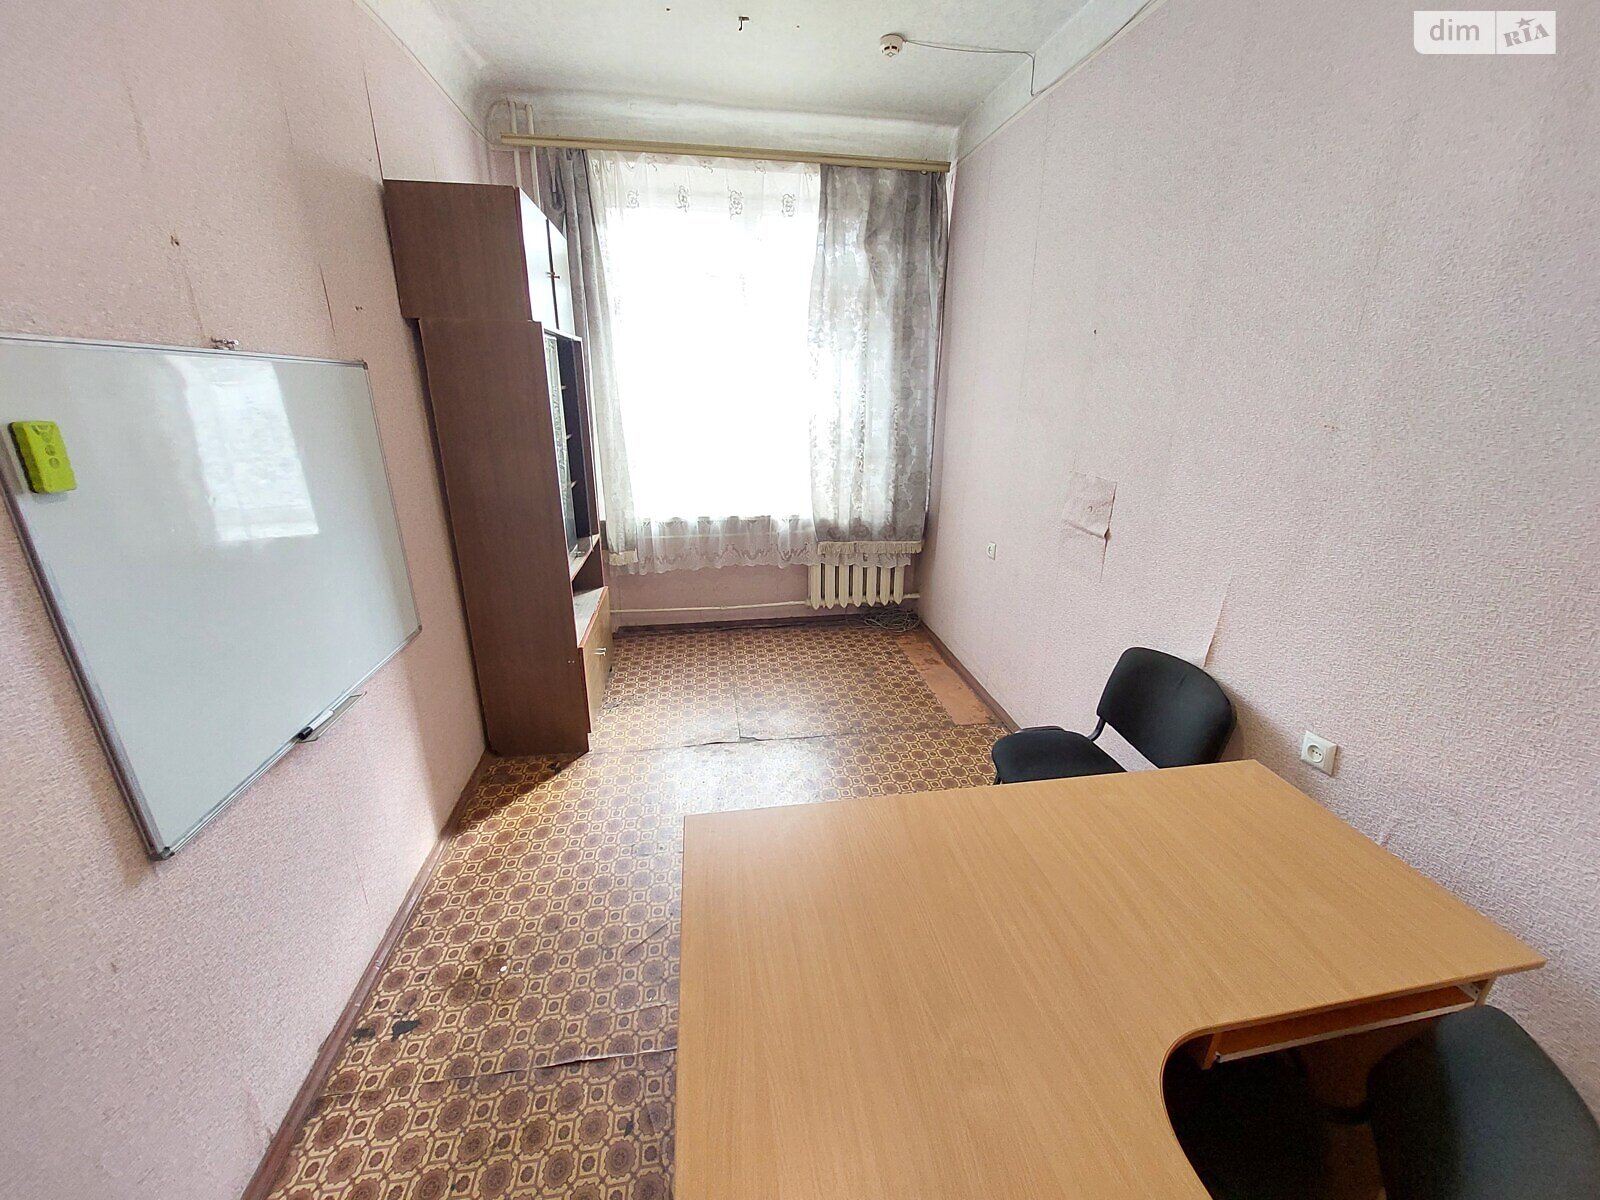 Аренда офисного помещения в Николаеве, Пограничная улица 167, помещений - 1, этаж - 1 фото 1